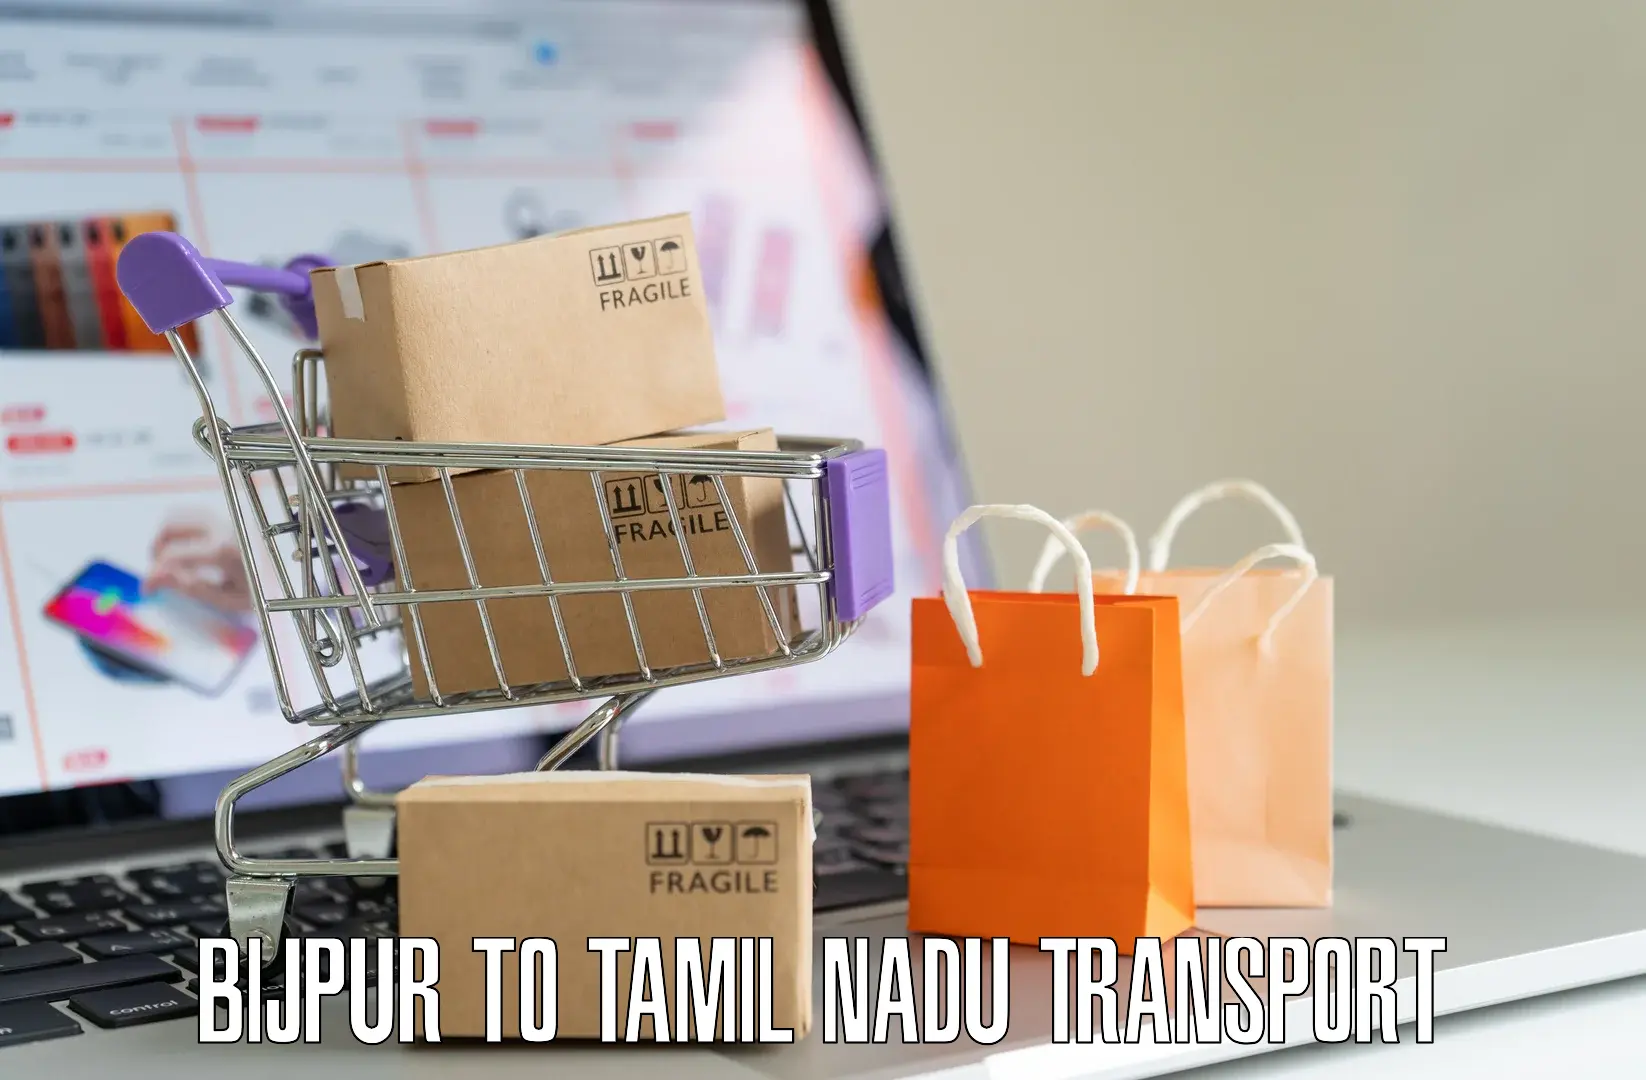 Road transport services Bijpur to Tamil Nadu